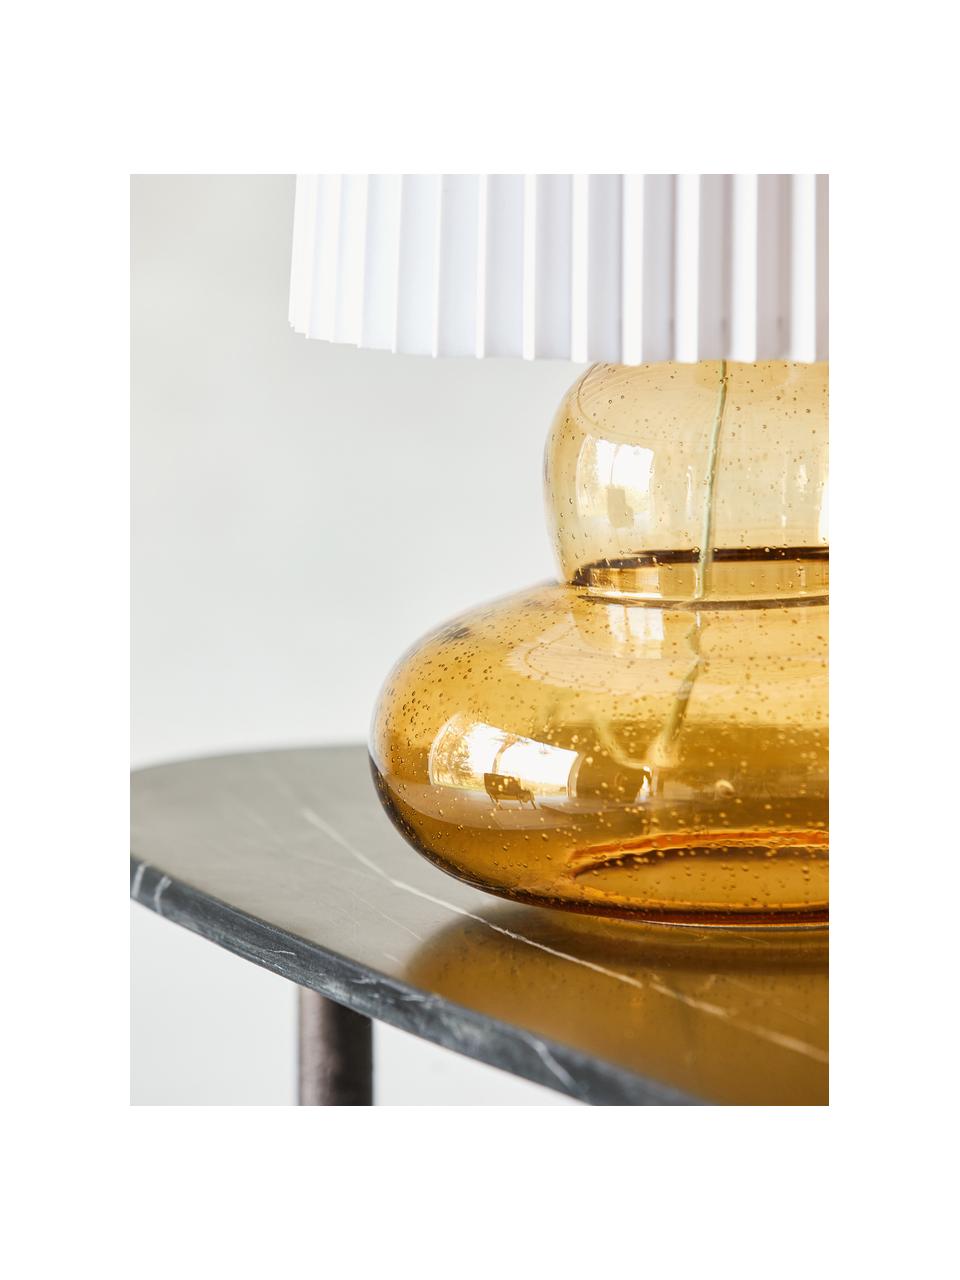 Große Tischlampe Ribe, Lampenschirm: Stoff, Metall, Lampenfuß: Glas, Ocker, Weiß, Ø 28 x H 55 cm